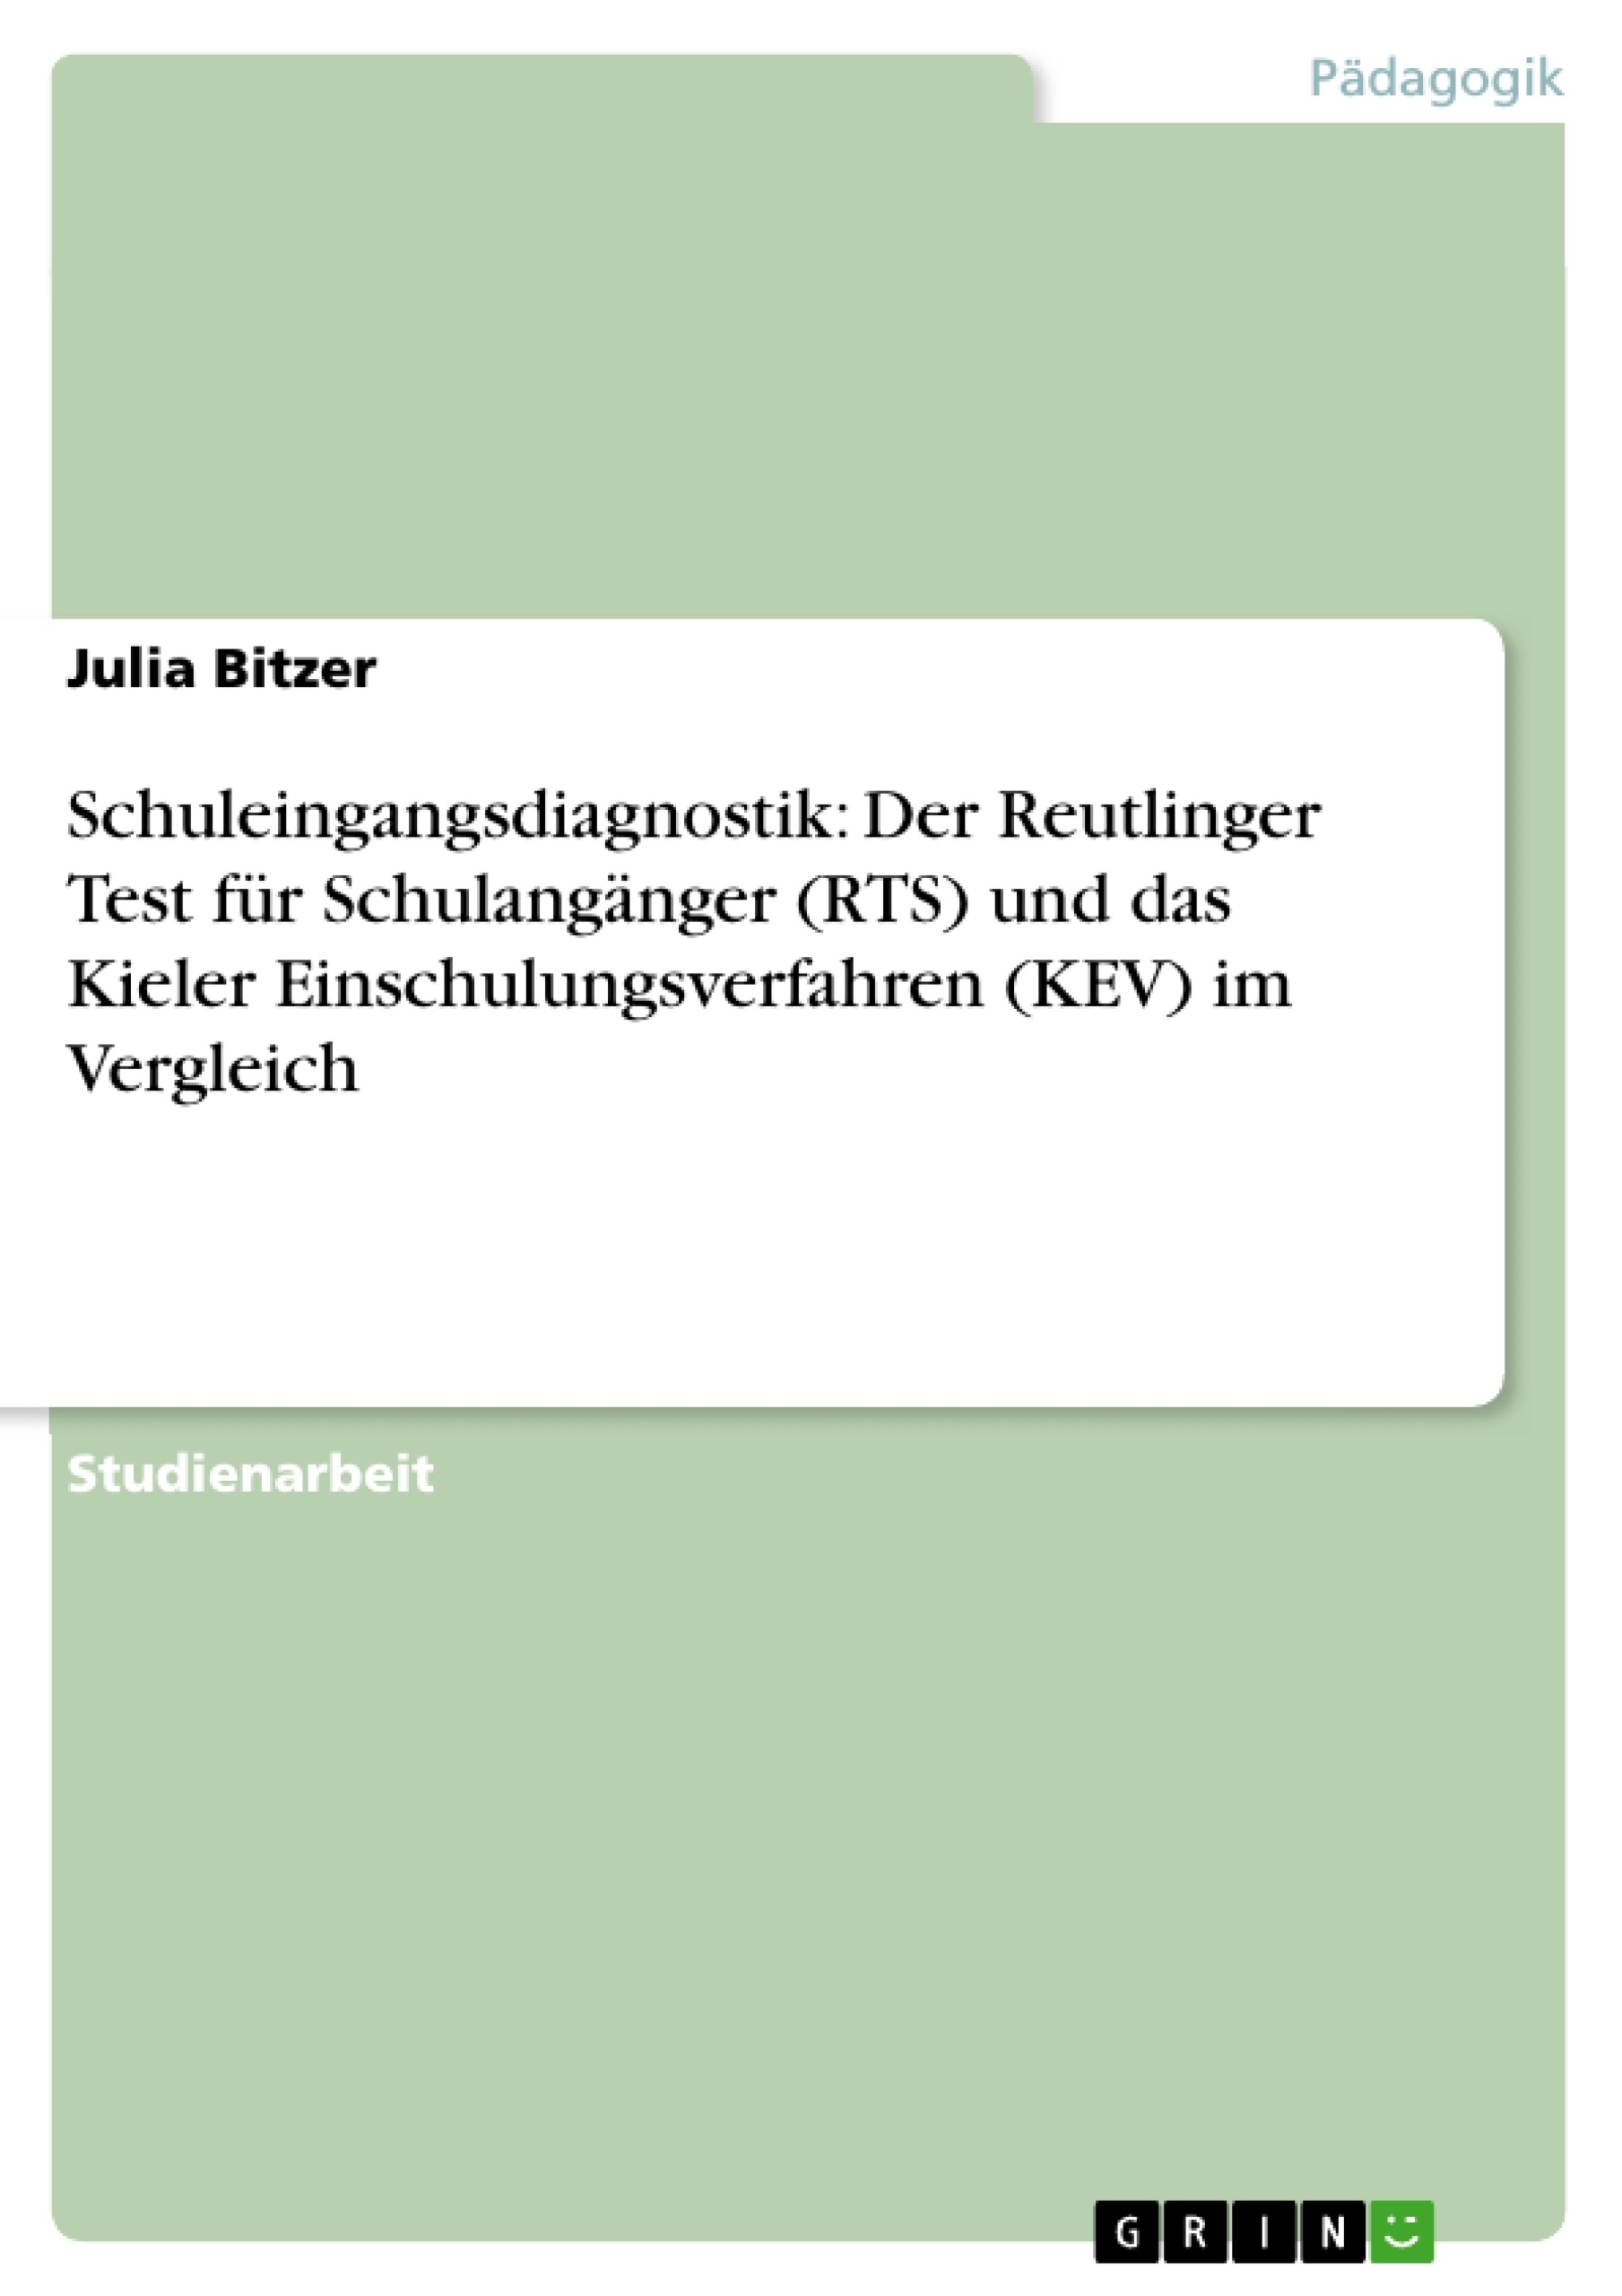 Título: Schuleingangsdiagnostik: Der Reutlinger Test für Schulangänger (RTS) und das Kieler Einschulungsverfahren (KEV) im Vergleich